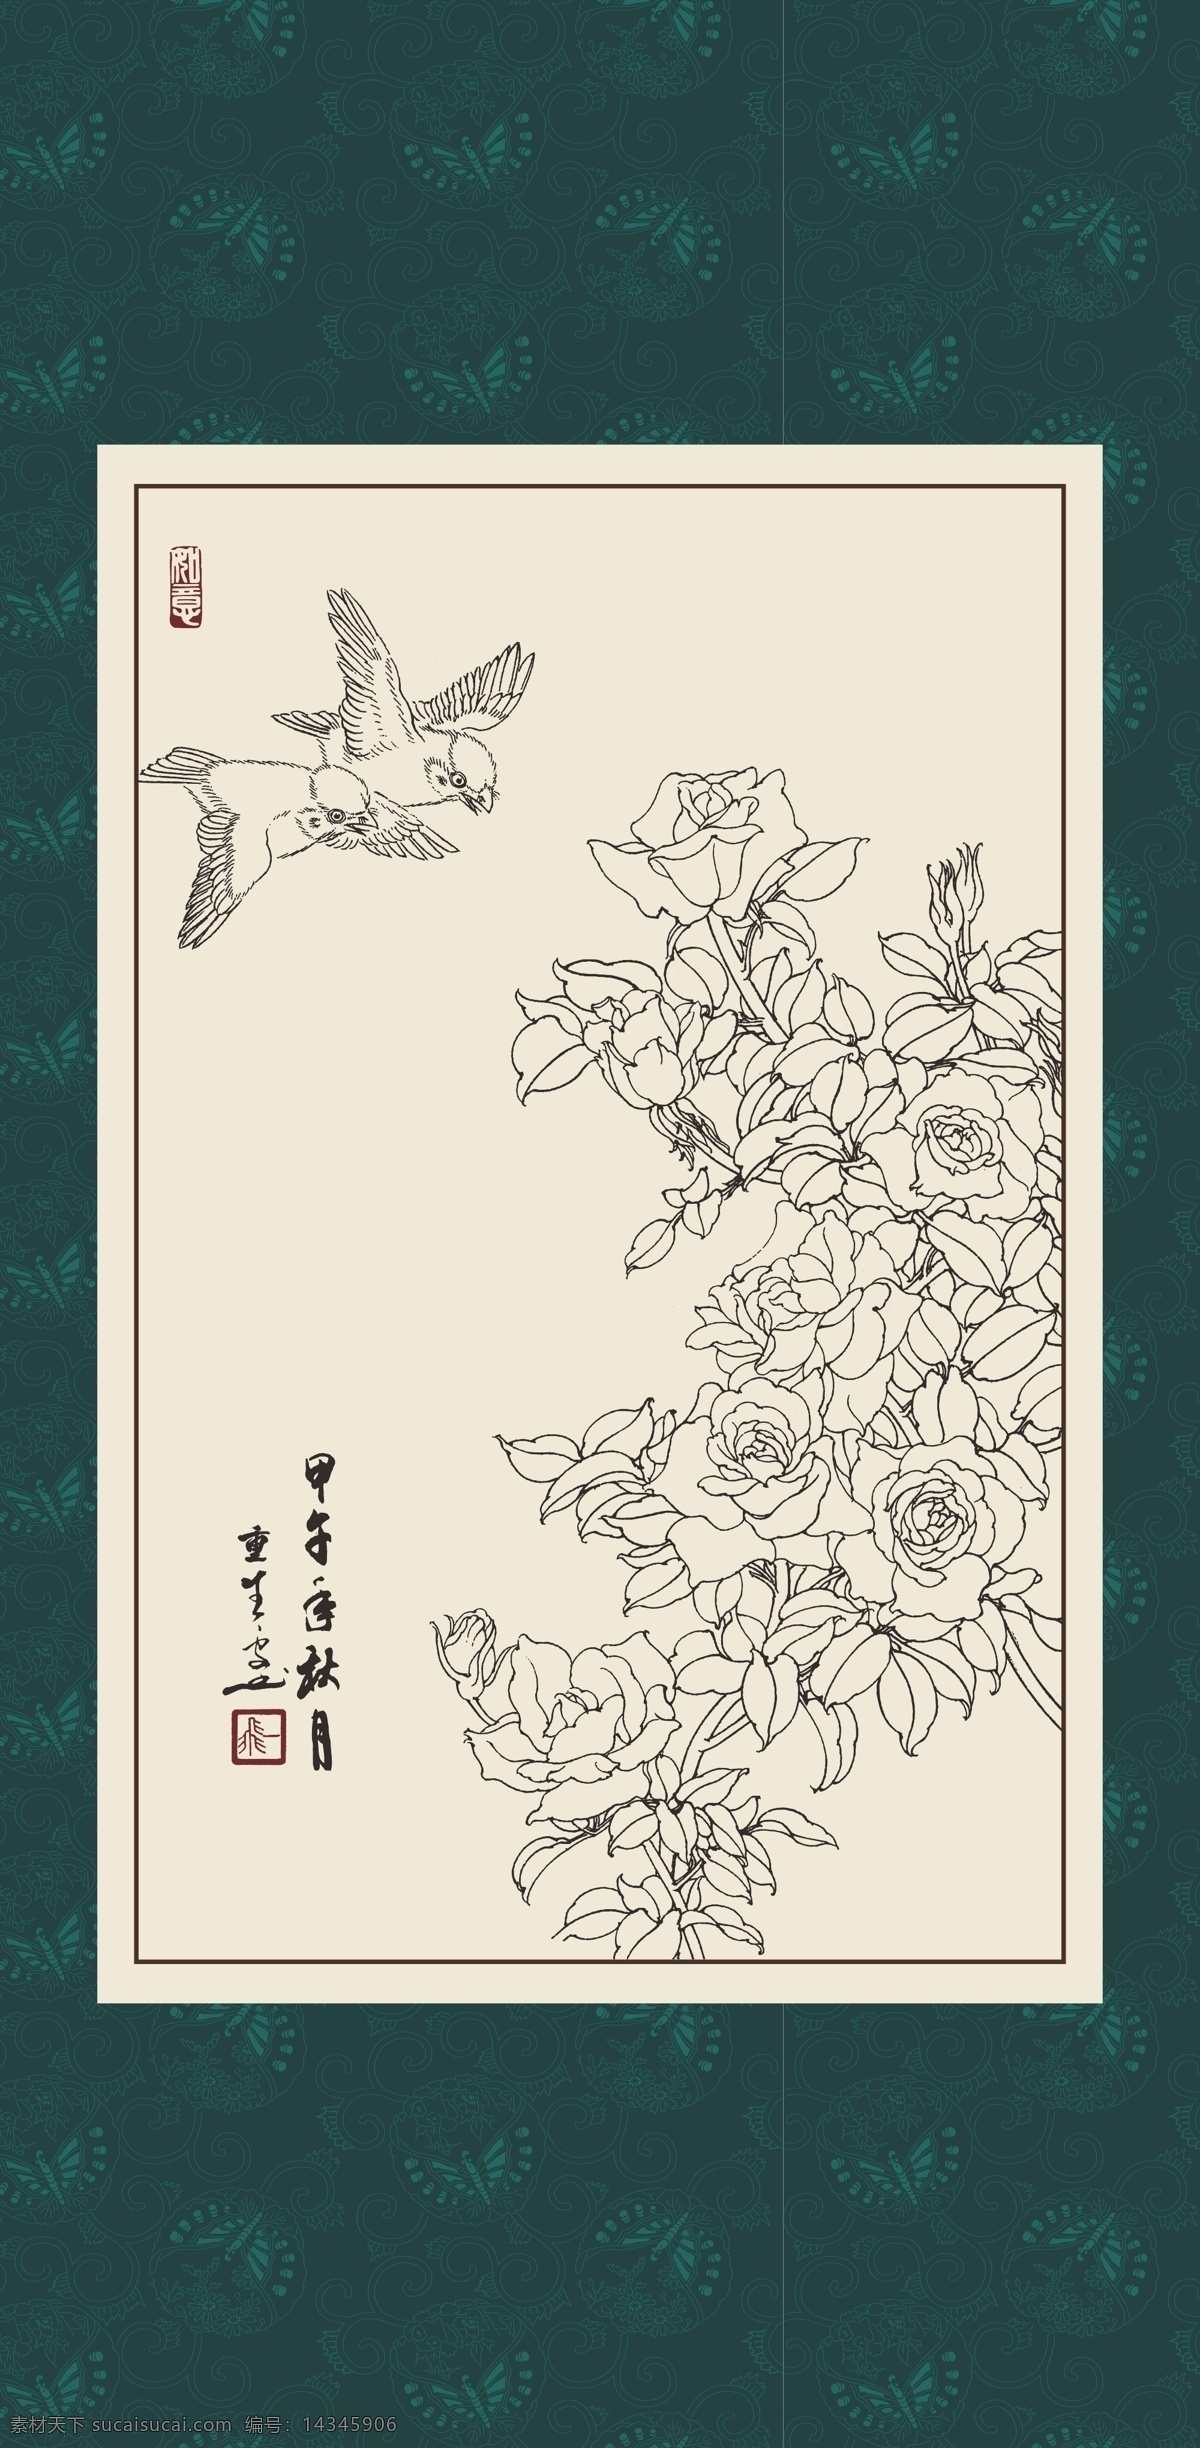 白描 线描 绘画 手绘 国画 印章 植物 花卉 工笔 gx150104 白描月季 玫瑰 文化艺术 绘画书法